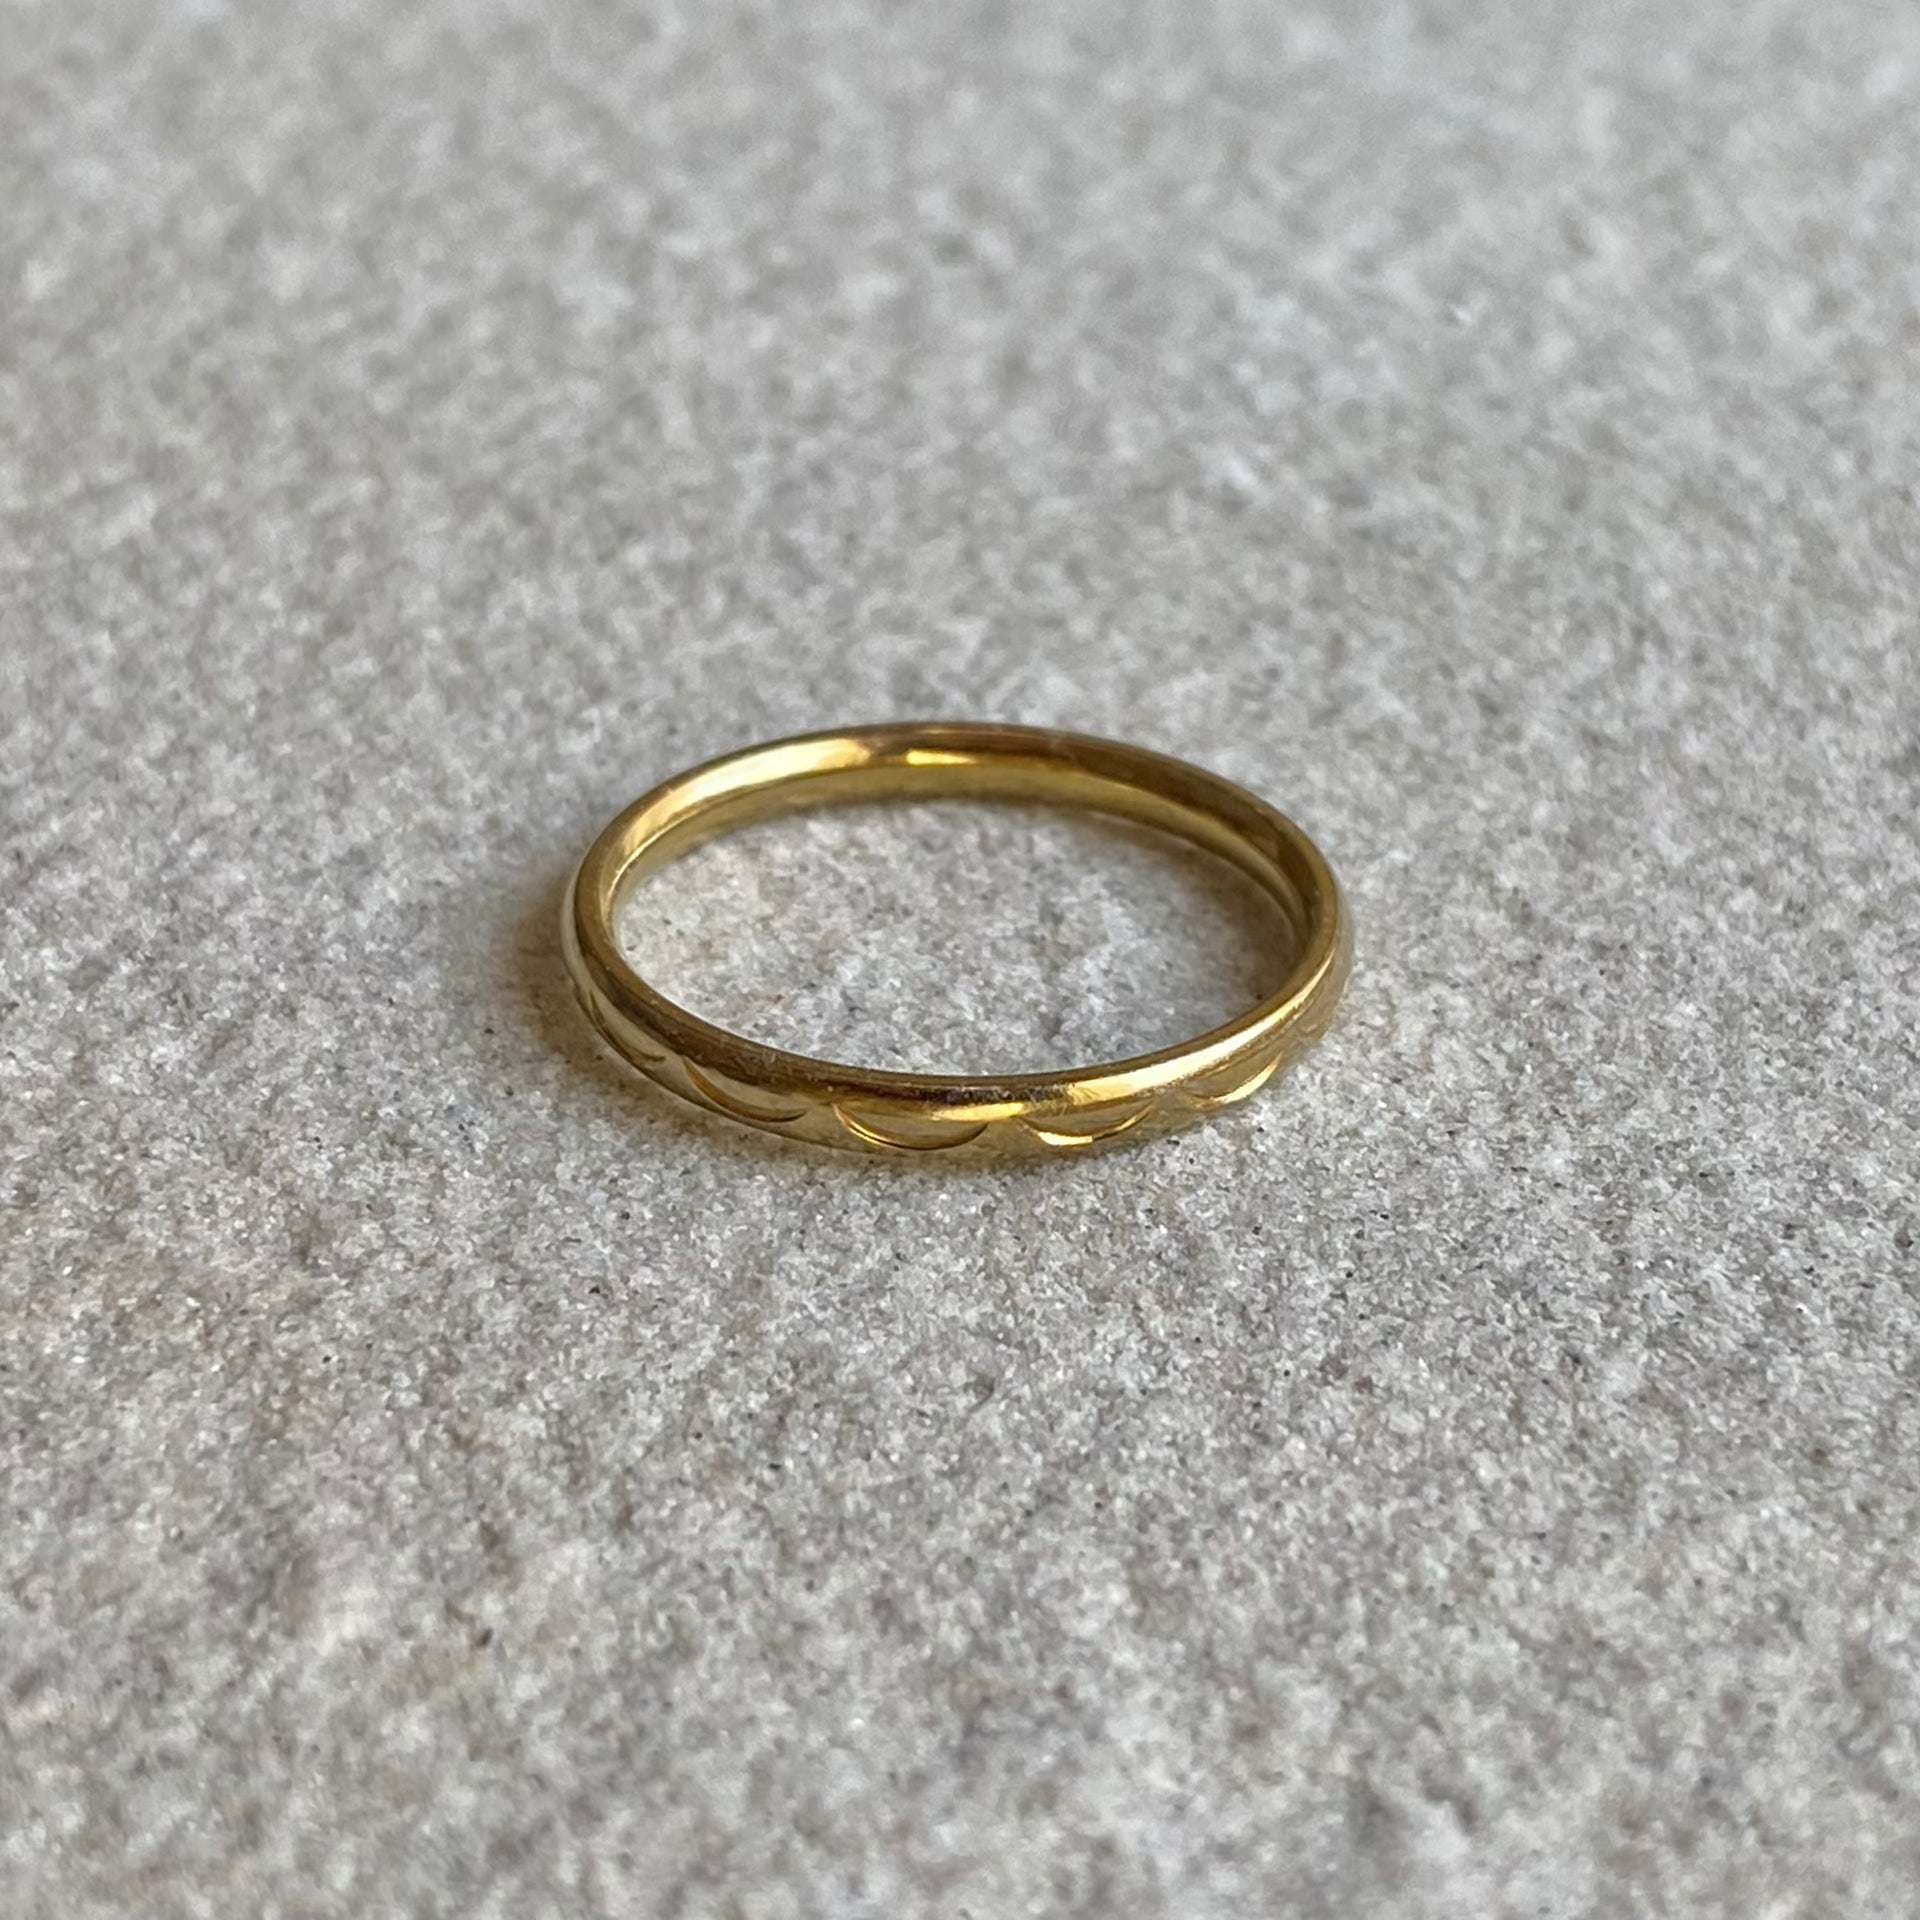 Halbmond Ring in gold auf weißer Steinplatte